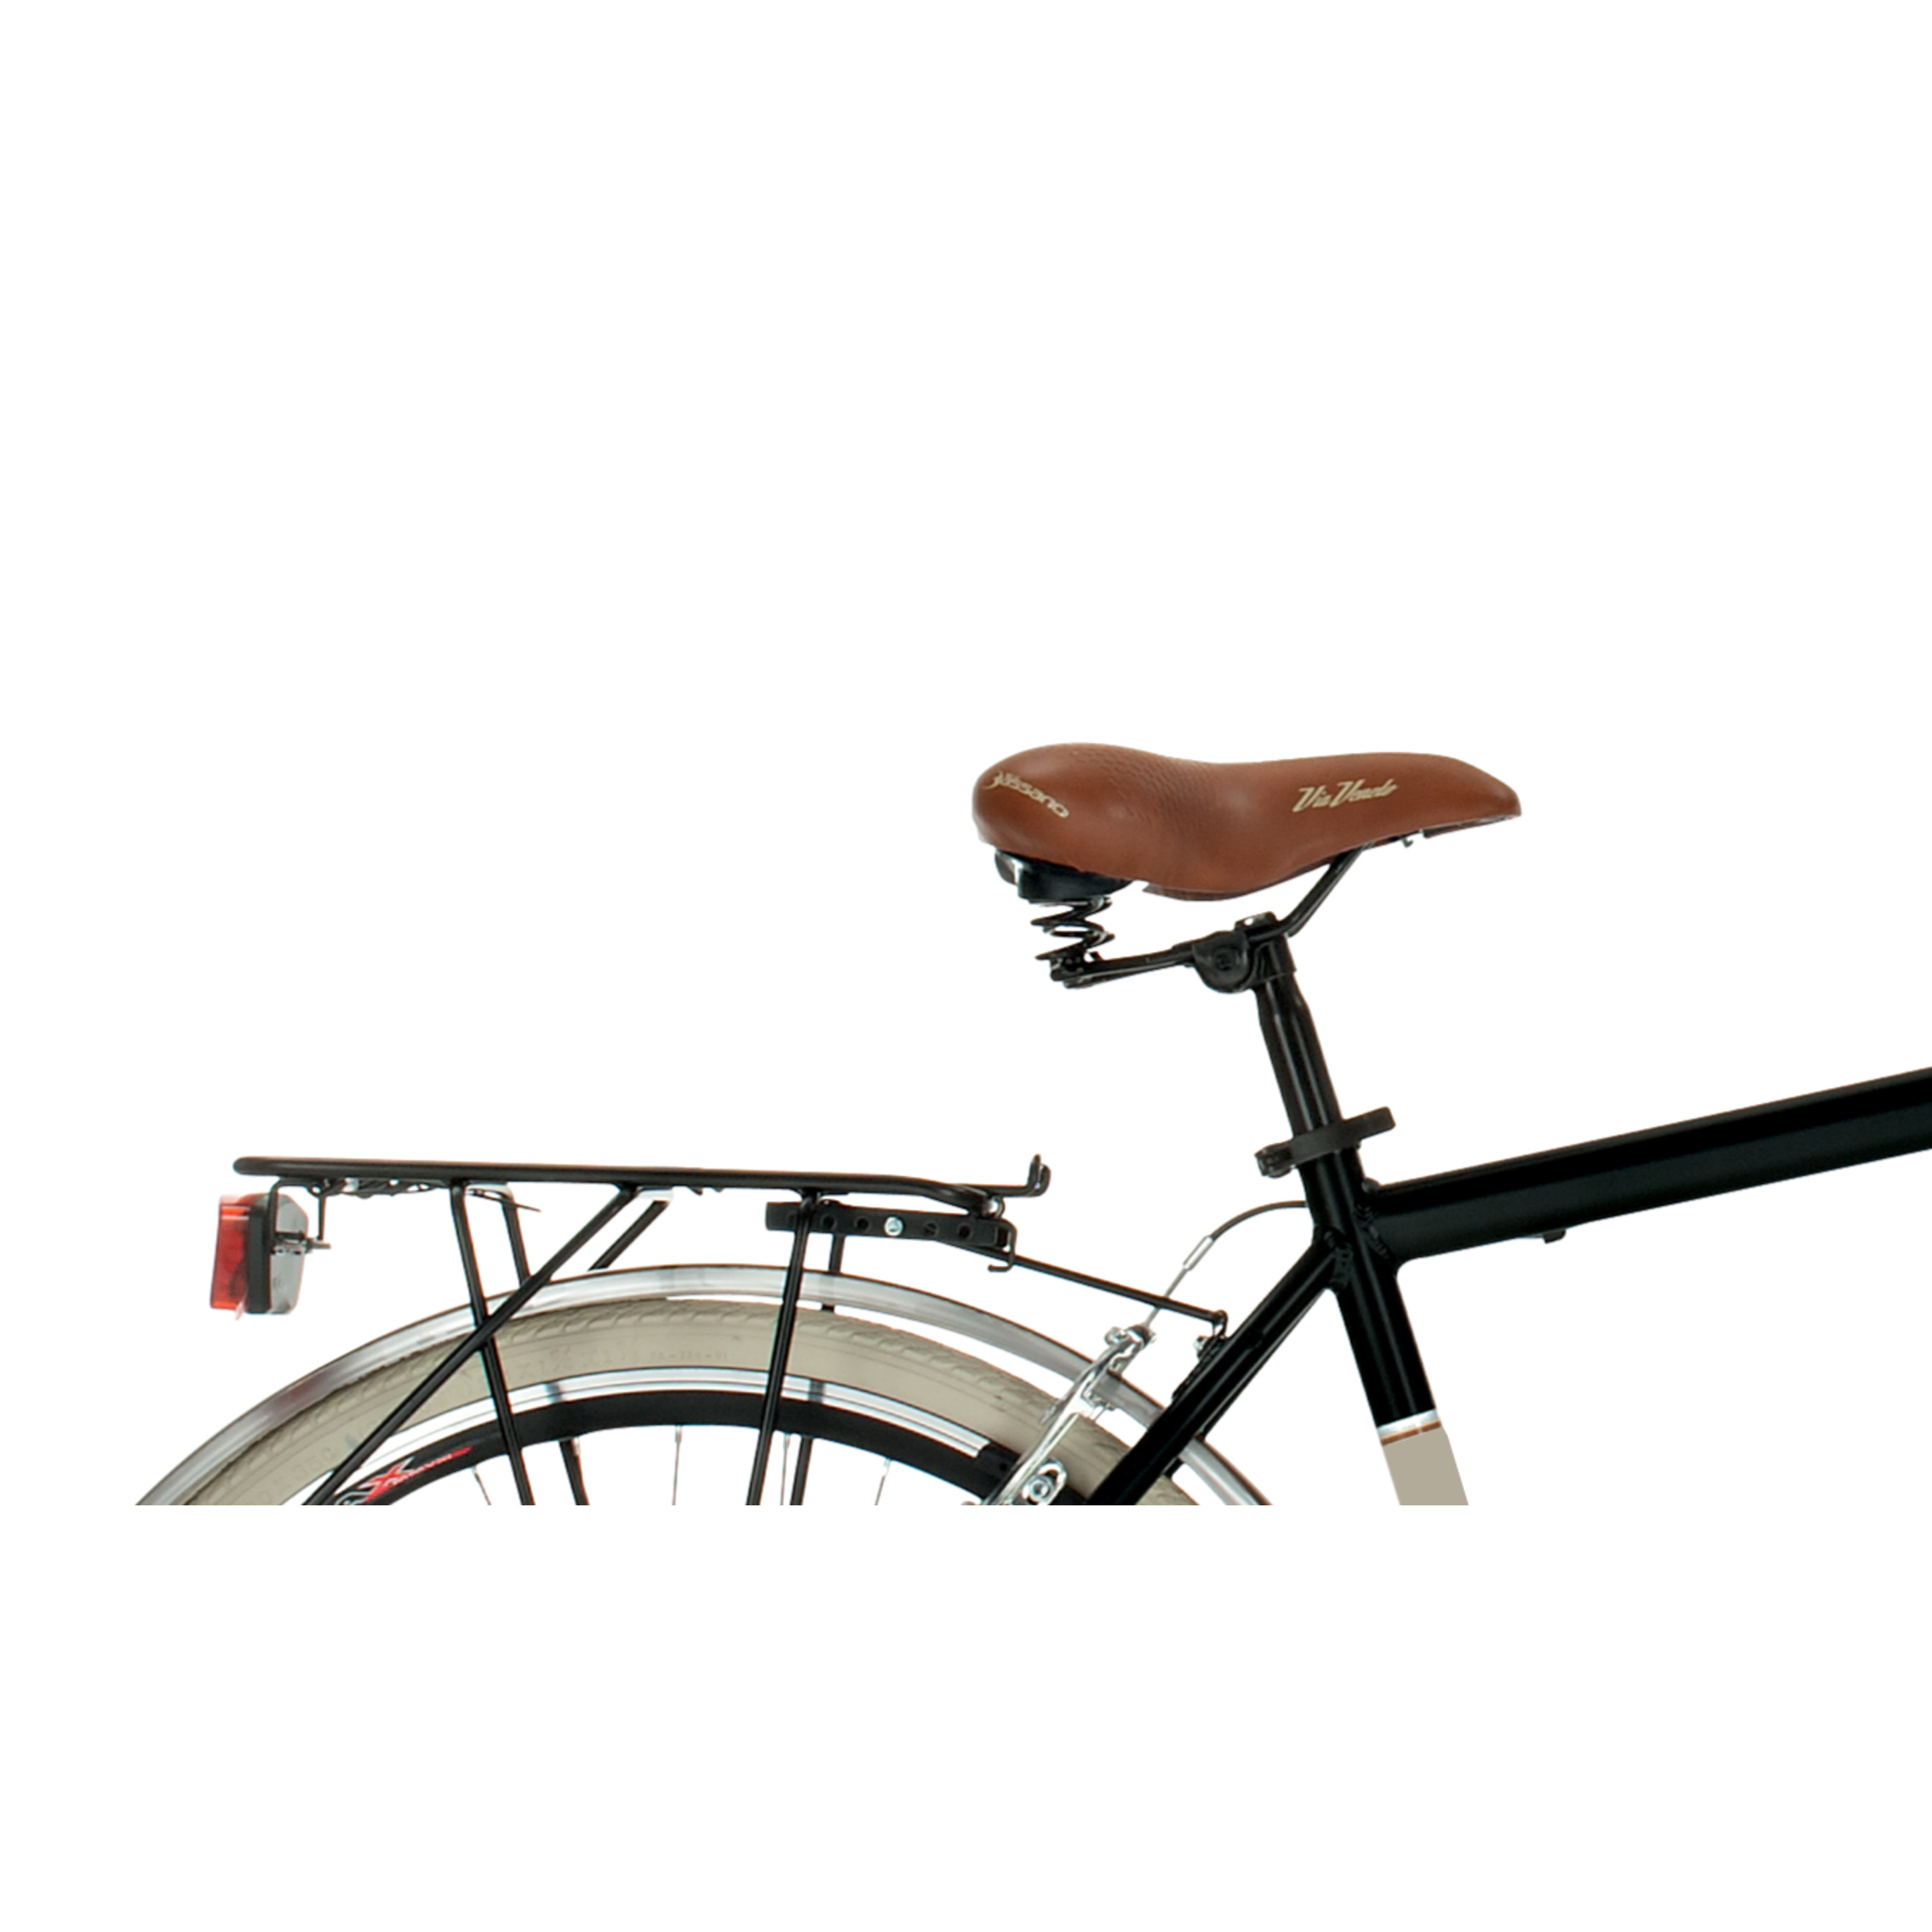 Bicicleta De Ciudad  Airbici 605am Elegance - Negro - Vintage, paseo, ciudad  MKP